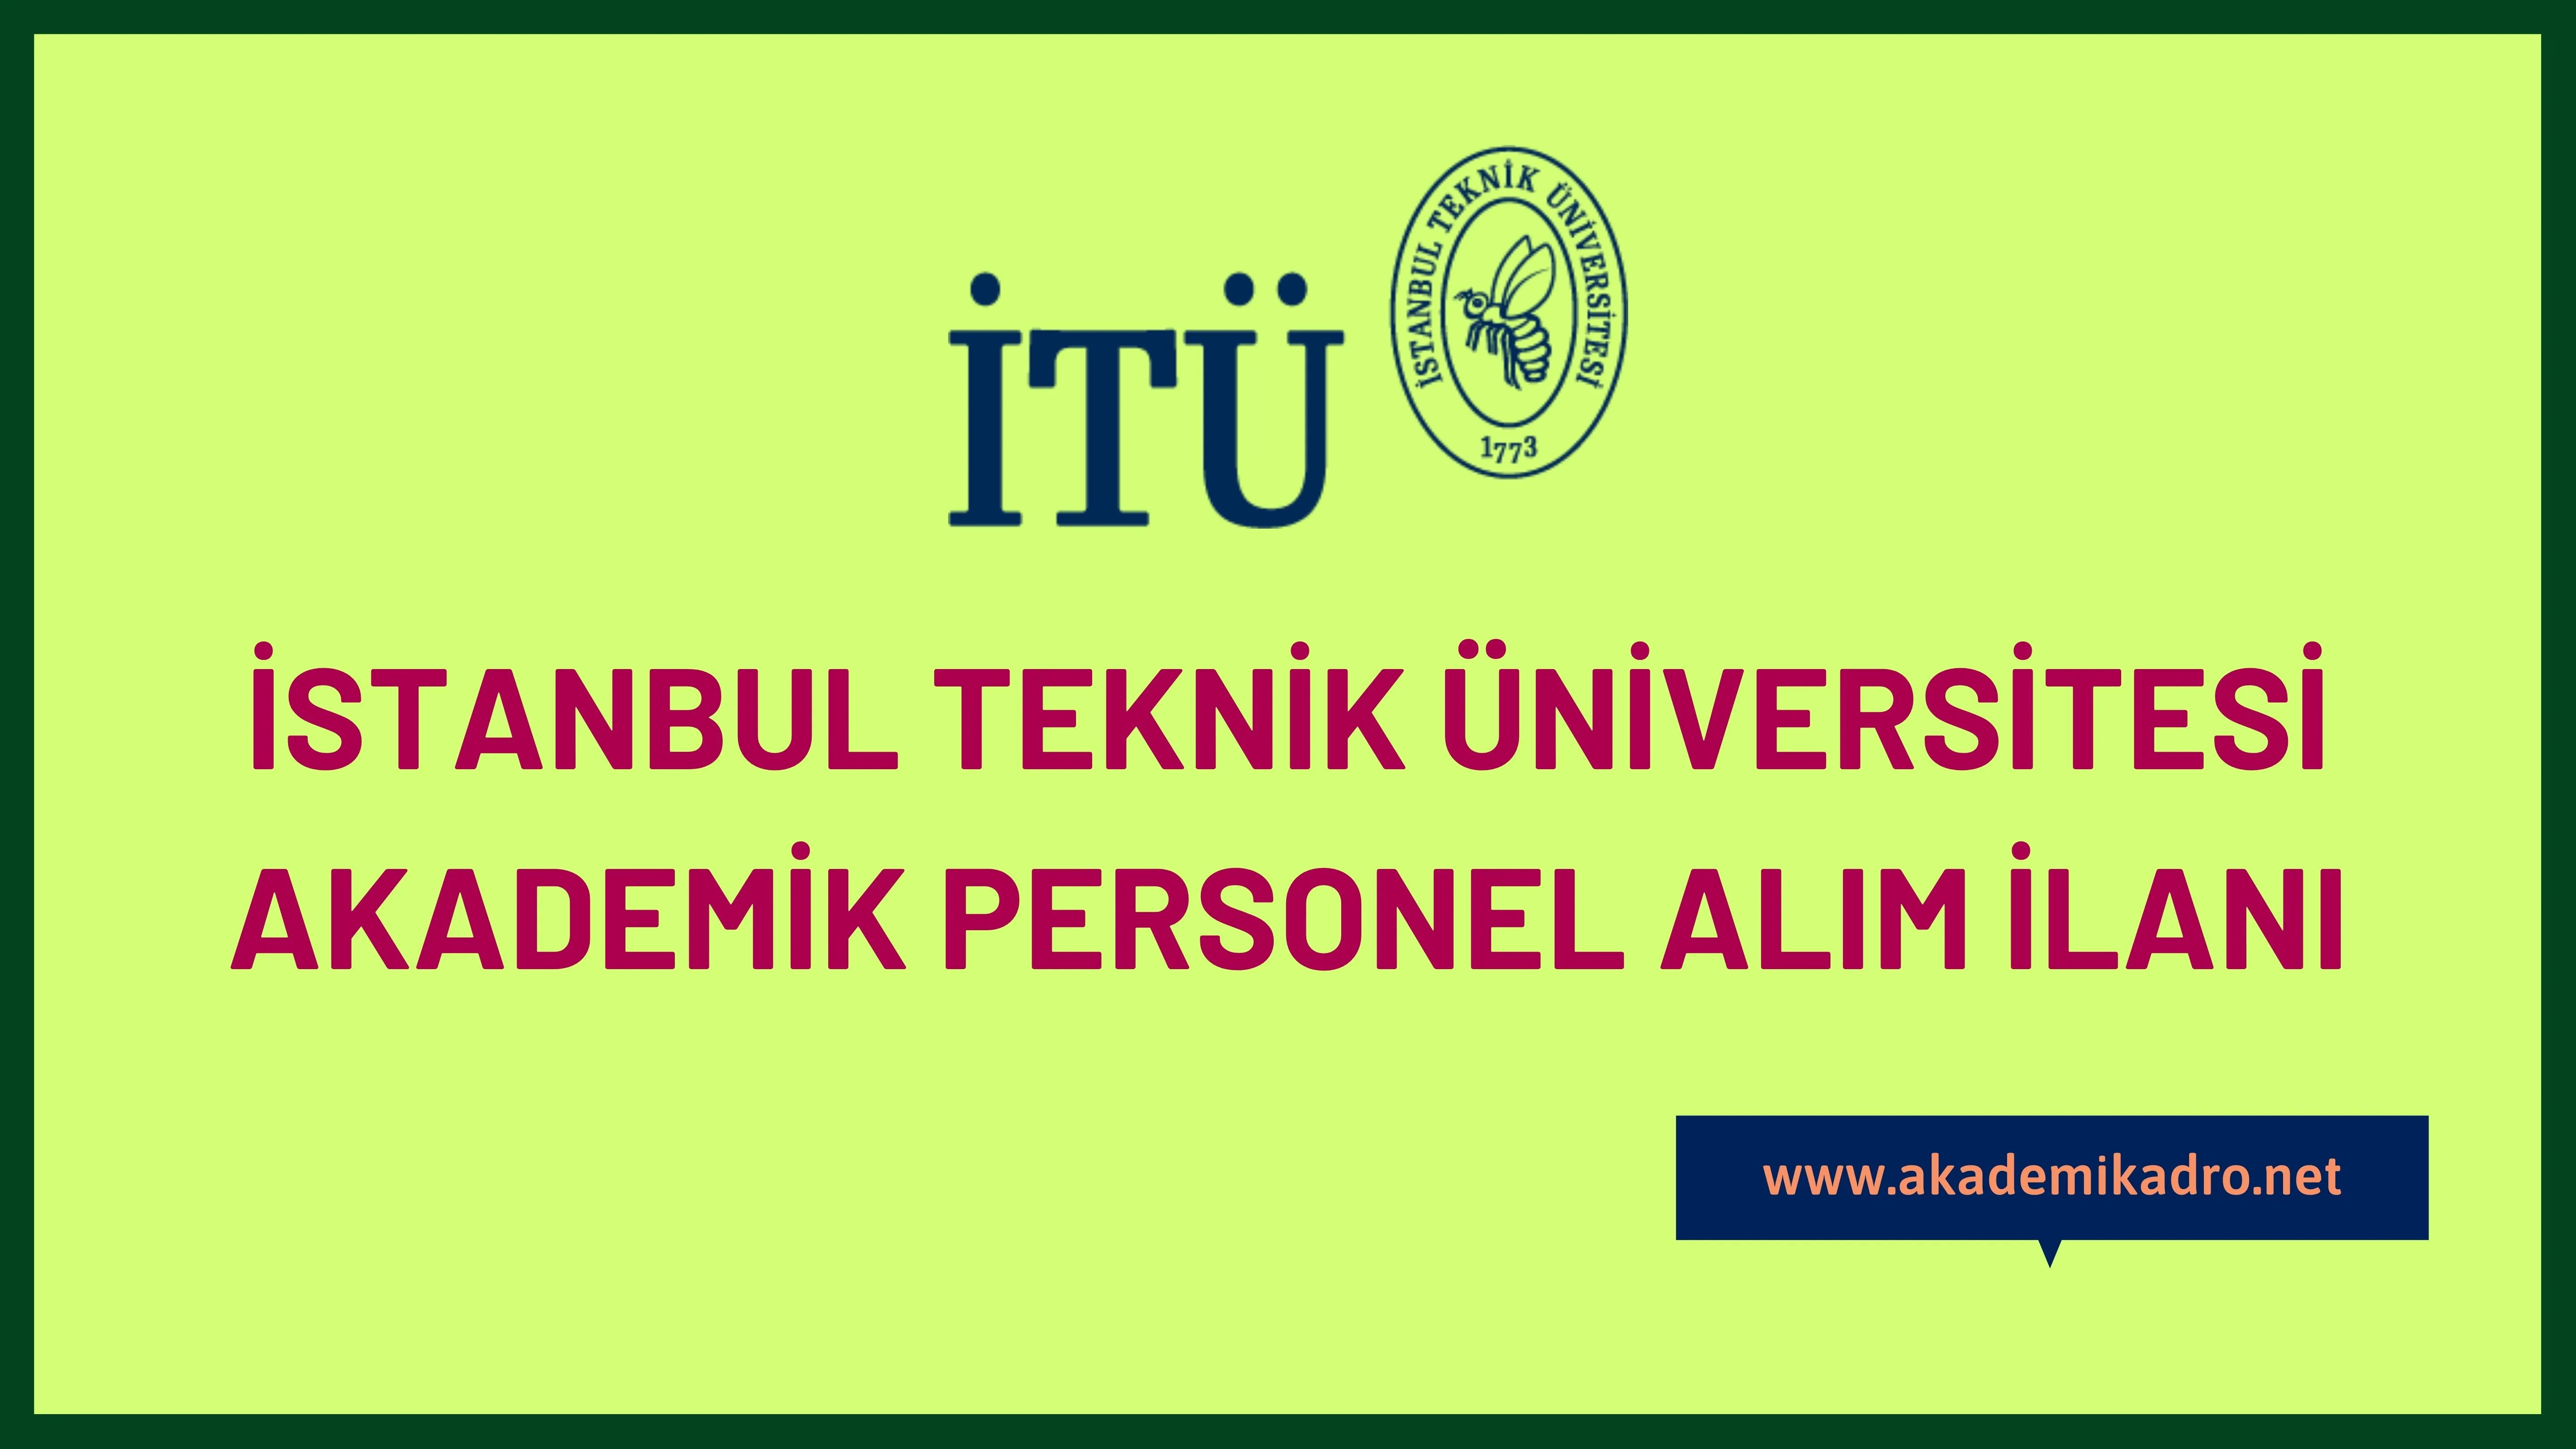 İstanbul Teknik Üniversitesi birçok alandan 32 öğretim üyesi alacak.